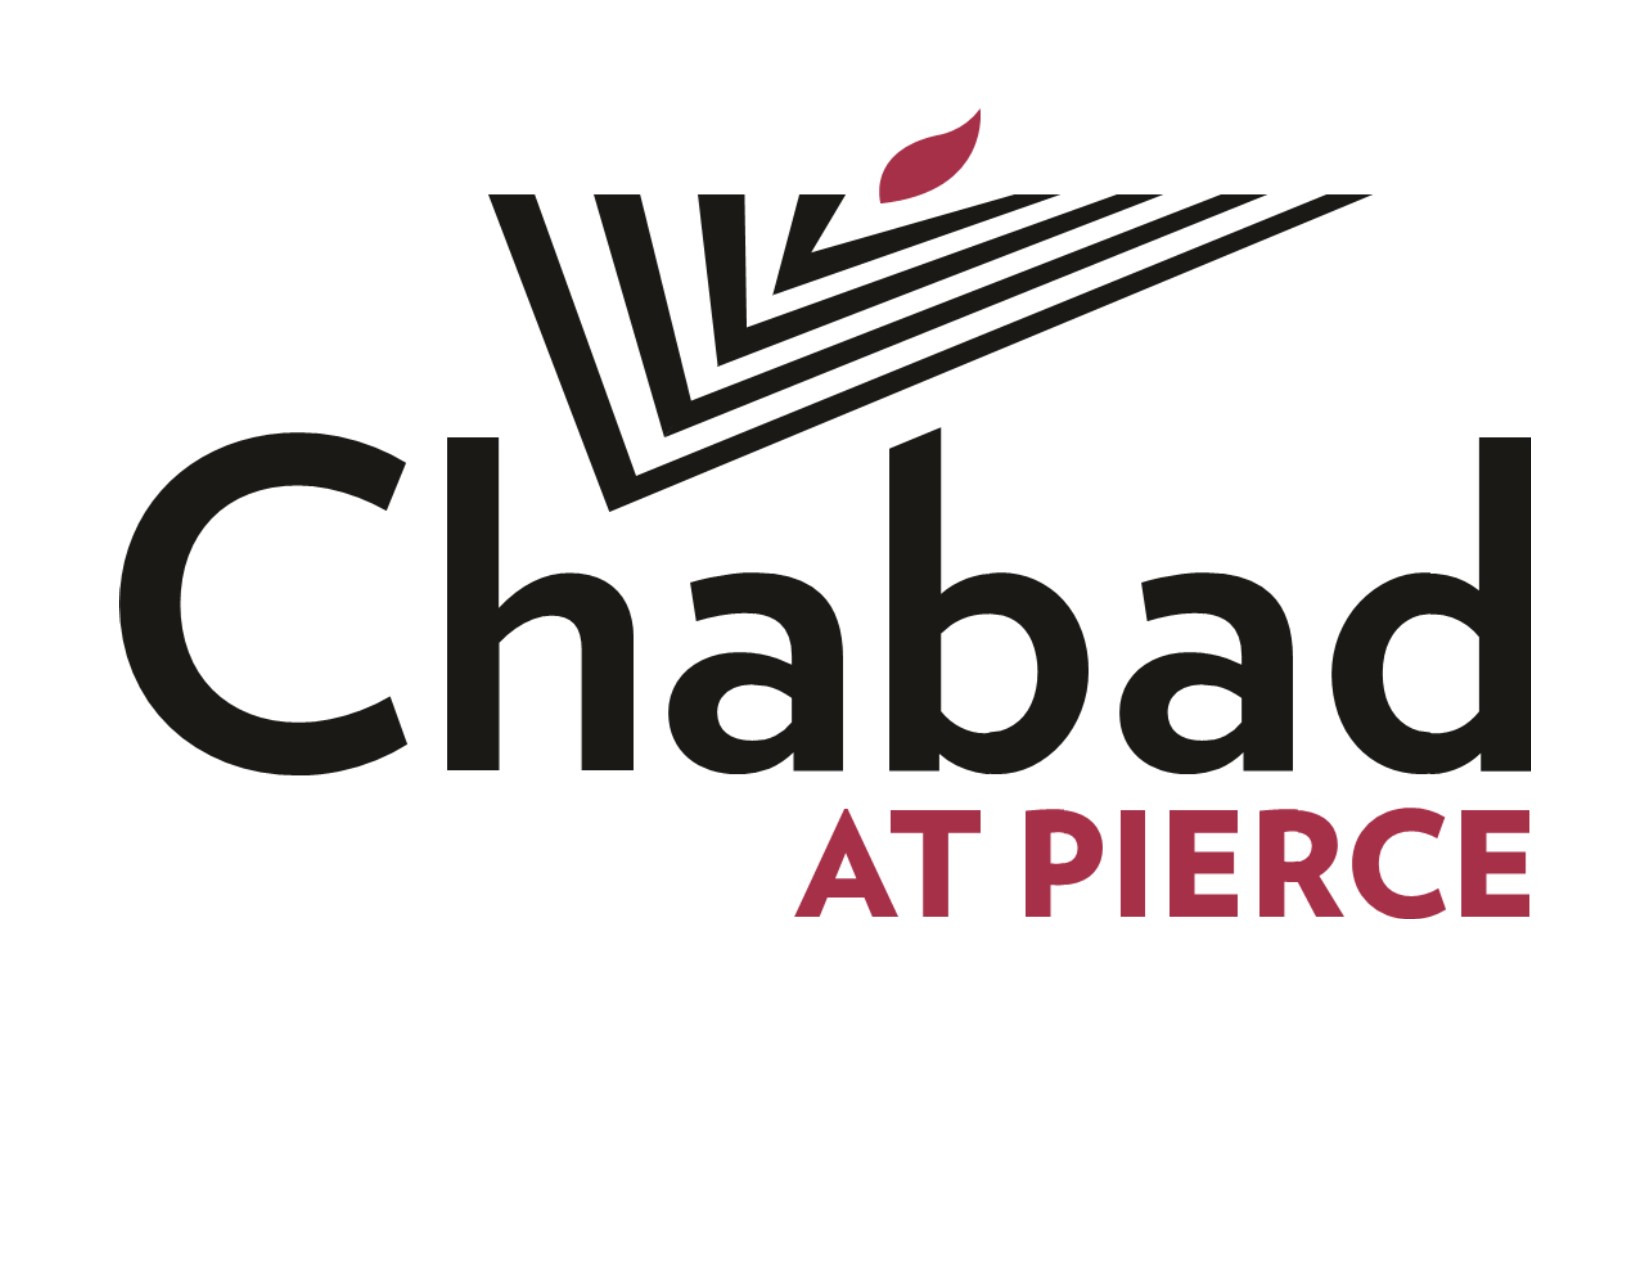 Chabad at Pierce logo